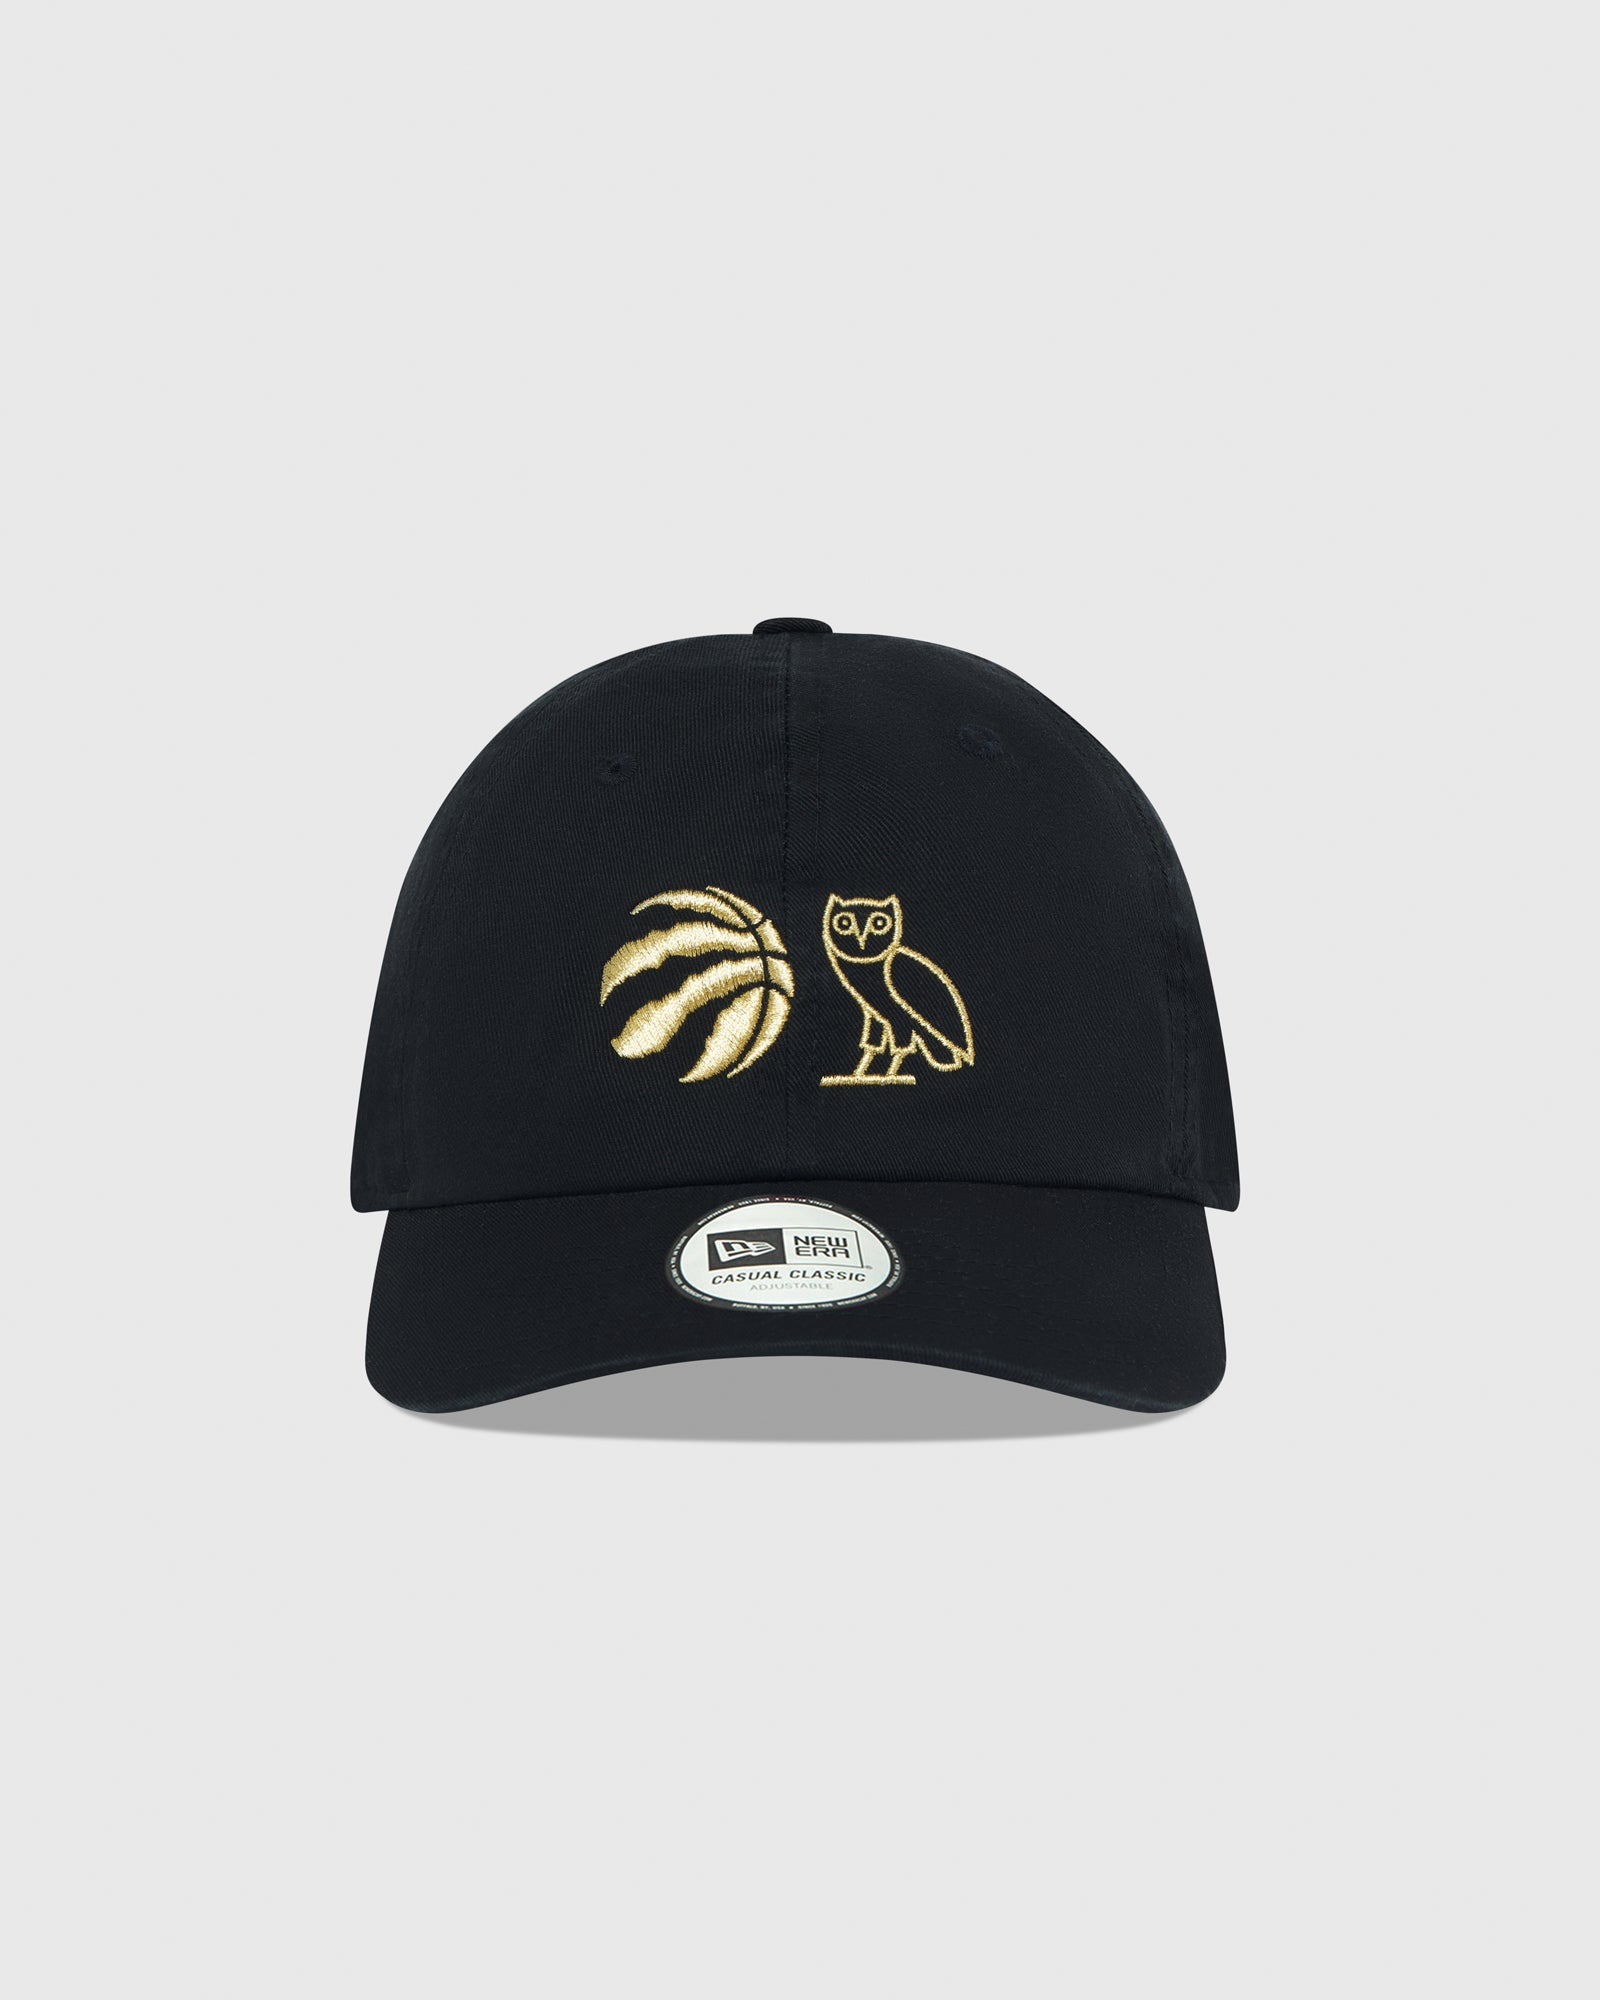 Toronto Raptors Sports Fan Hats